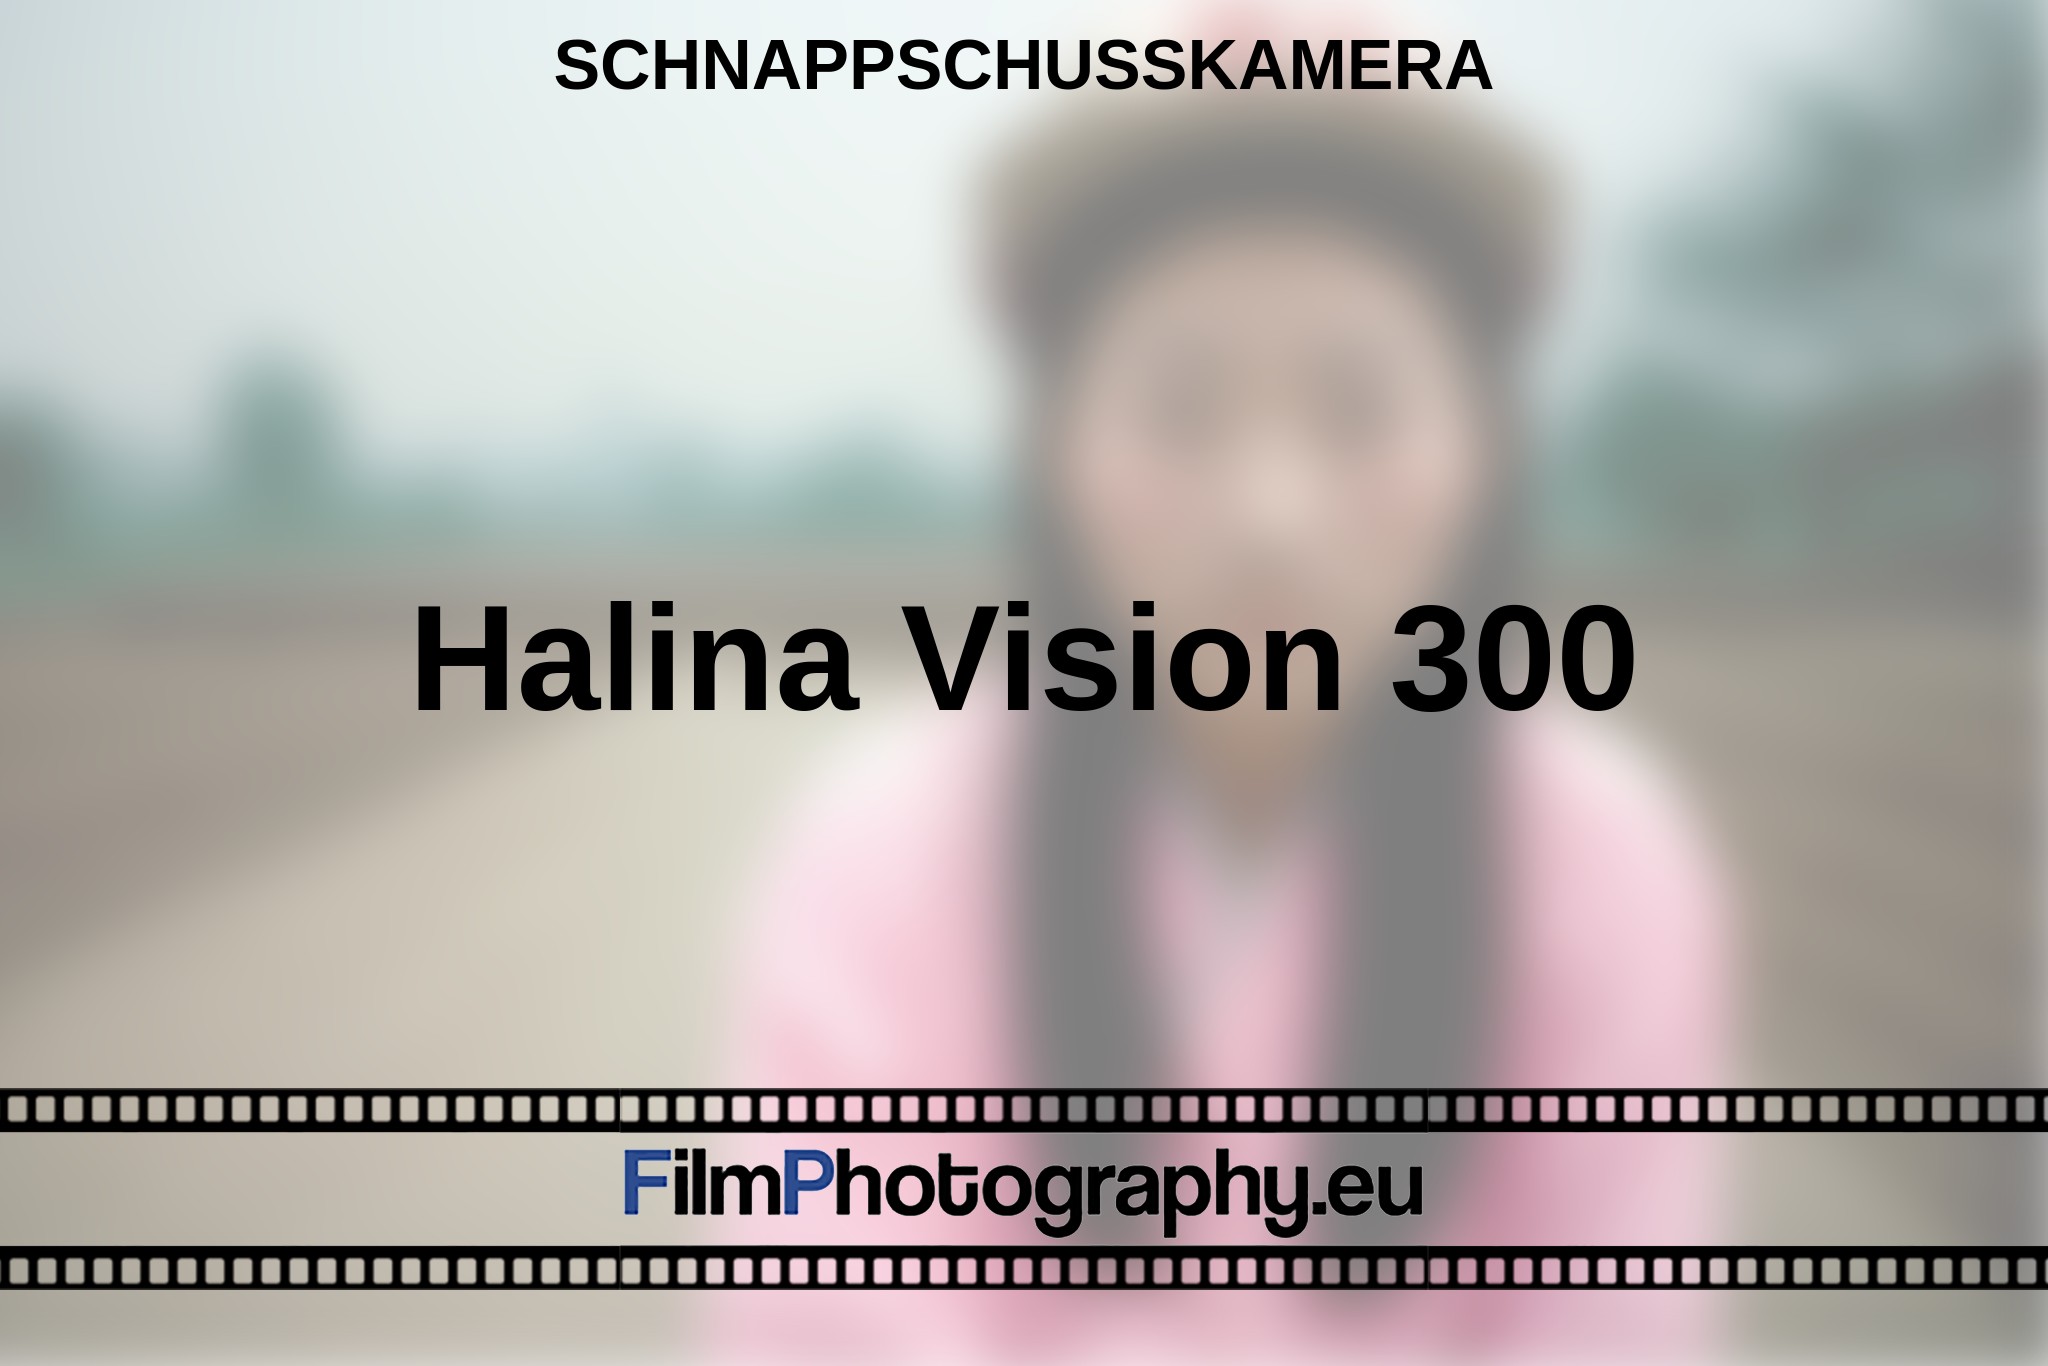 halina-vision-300-schnappschusskamera-bnv.jpg